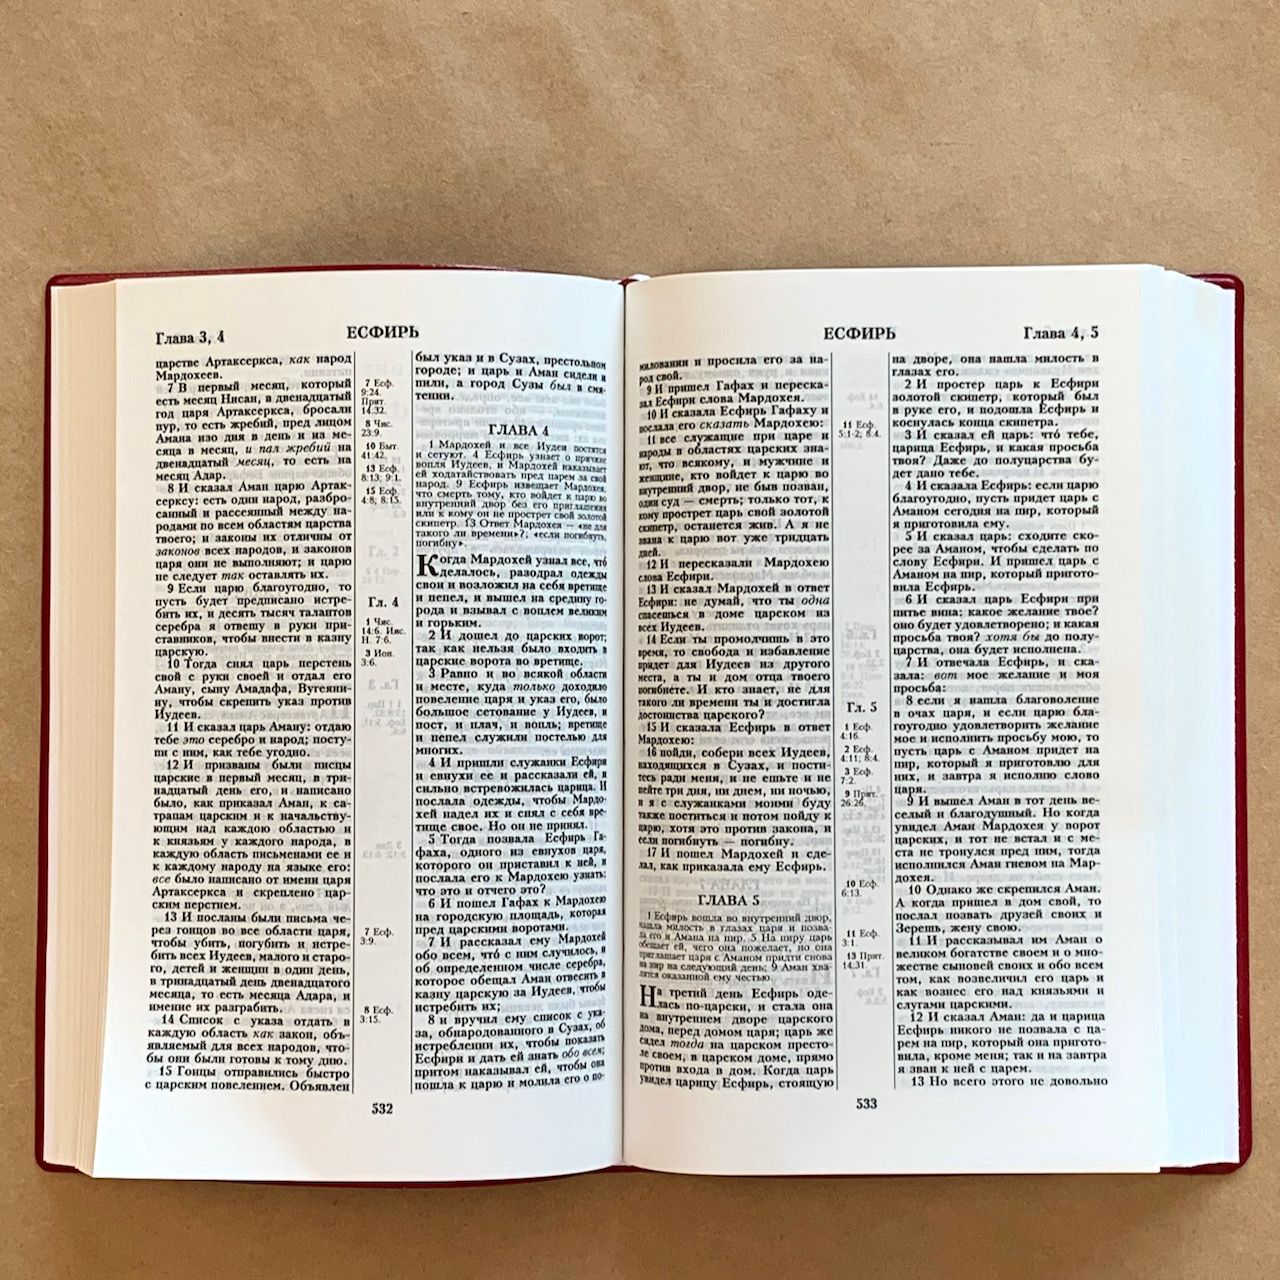 Библия 055 код C1 7115 переплет из искусственной кожи, цвет бордо с рельефом, дизайн "дорога ко Кресту", средний формат, 140*213 мм, параллельные места по центру страницы, крупный шрифт